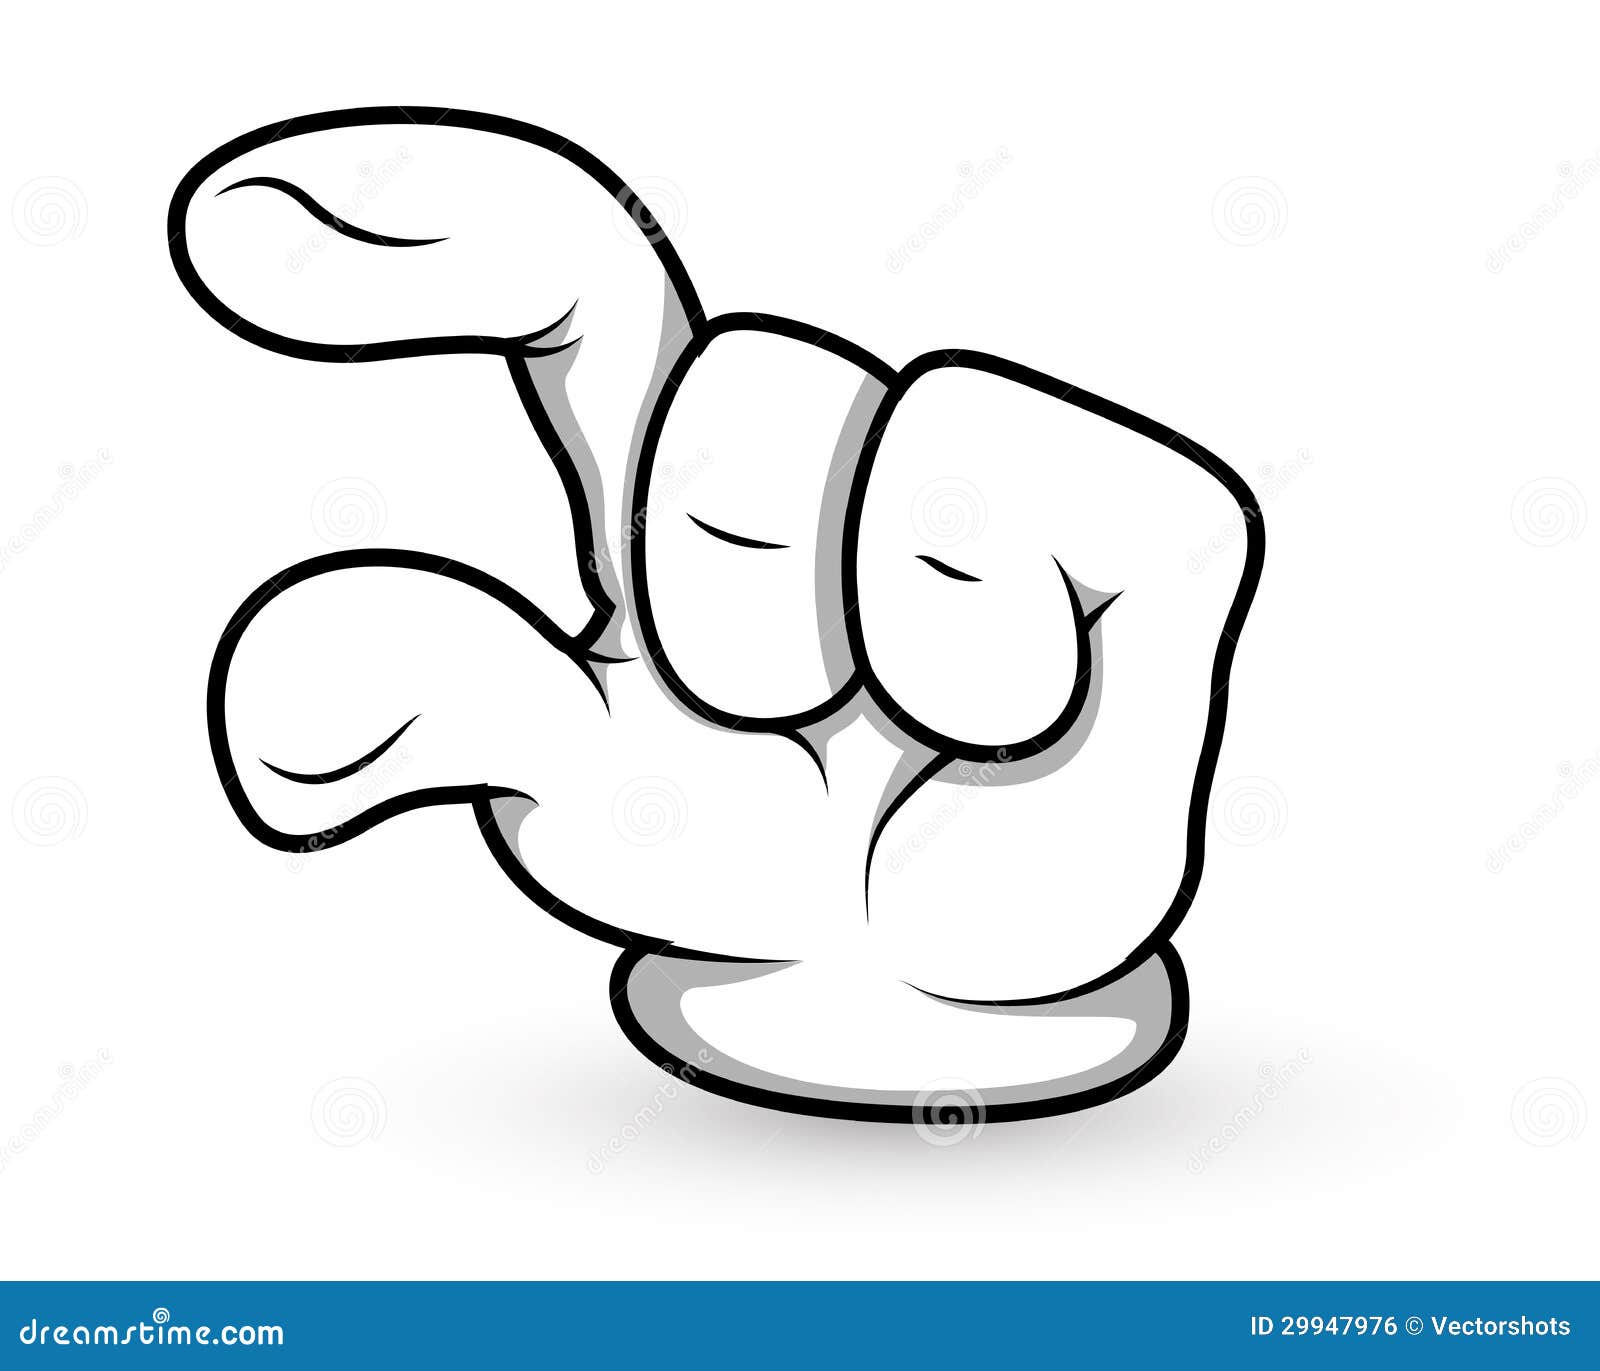 Cartoon Hand - Finger Pointing - Vector Illustration Stock Vector